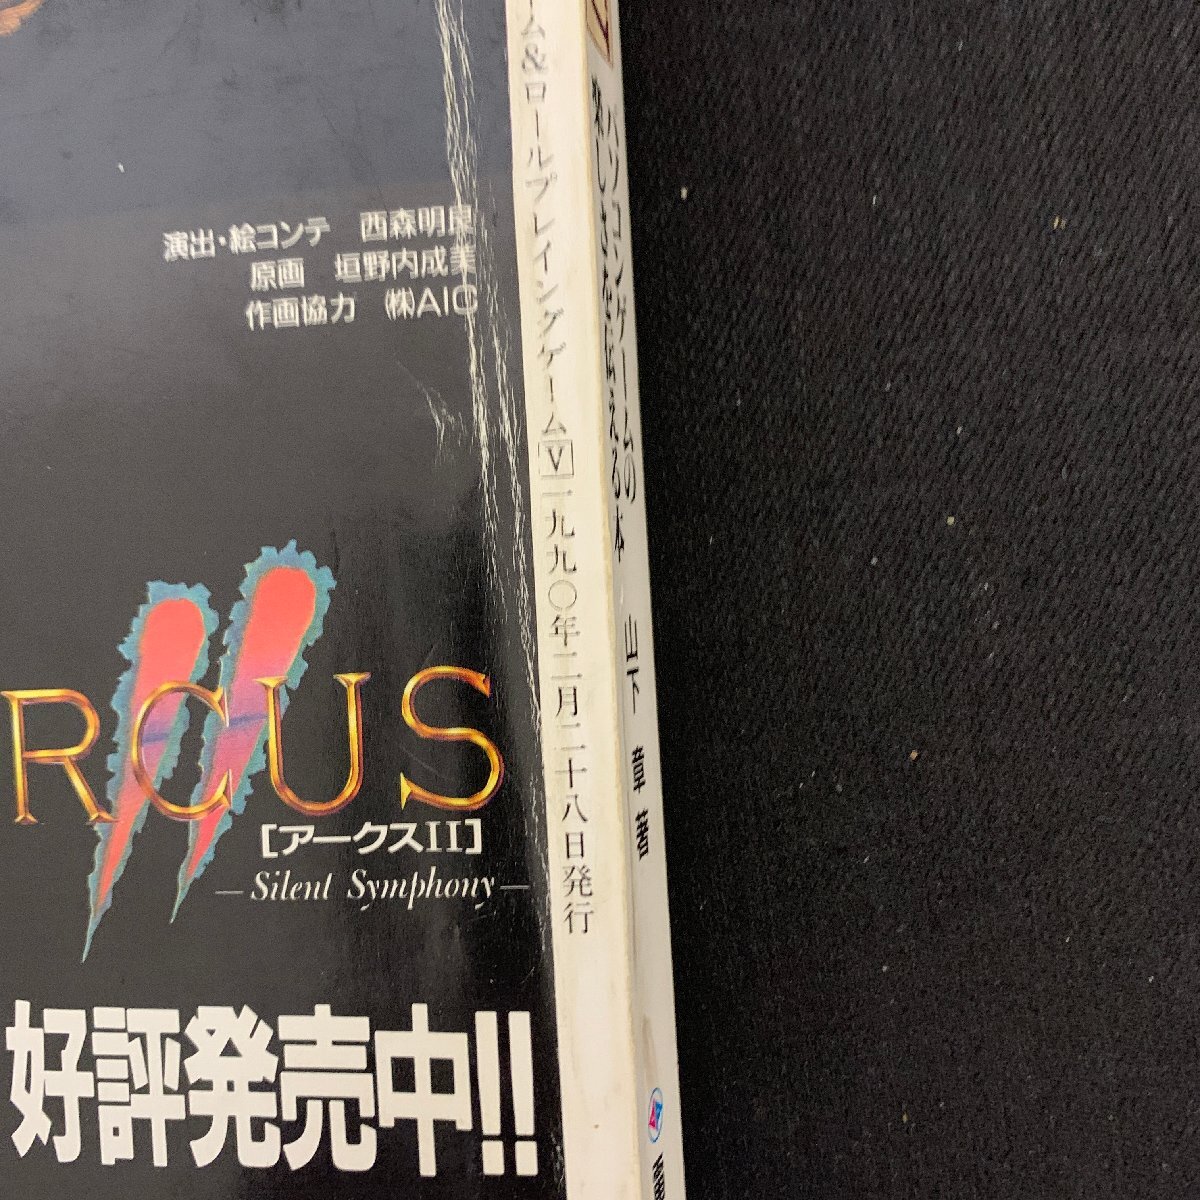 L057 радиоволны газета фирма microcomputer BASIC журнал отдельный выпуск AVG&RPG Ⅴ эпоха Heisei 2 год 2 месяц 28 день выпуск Showa Retro 